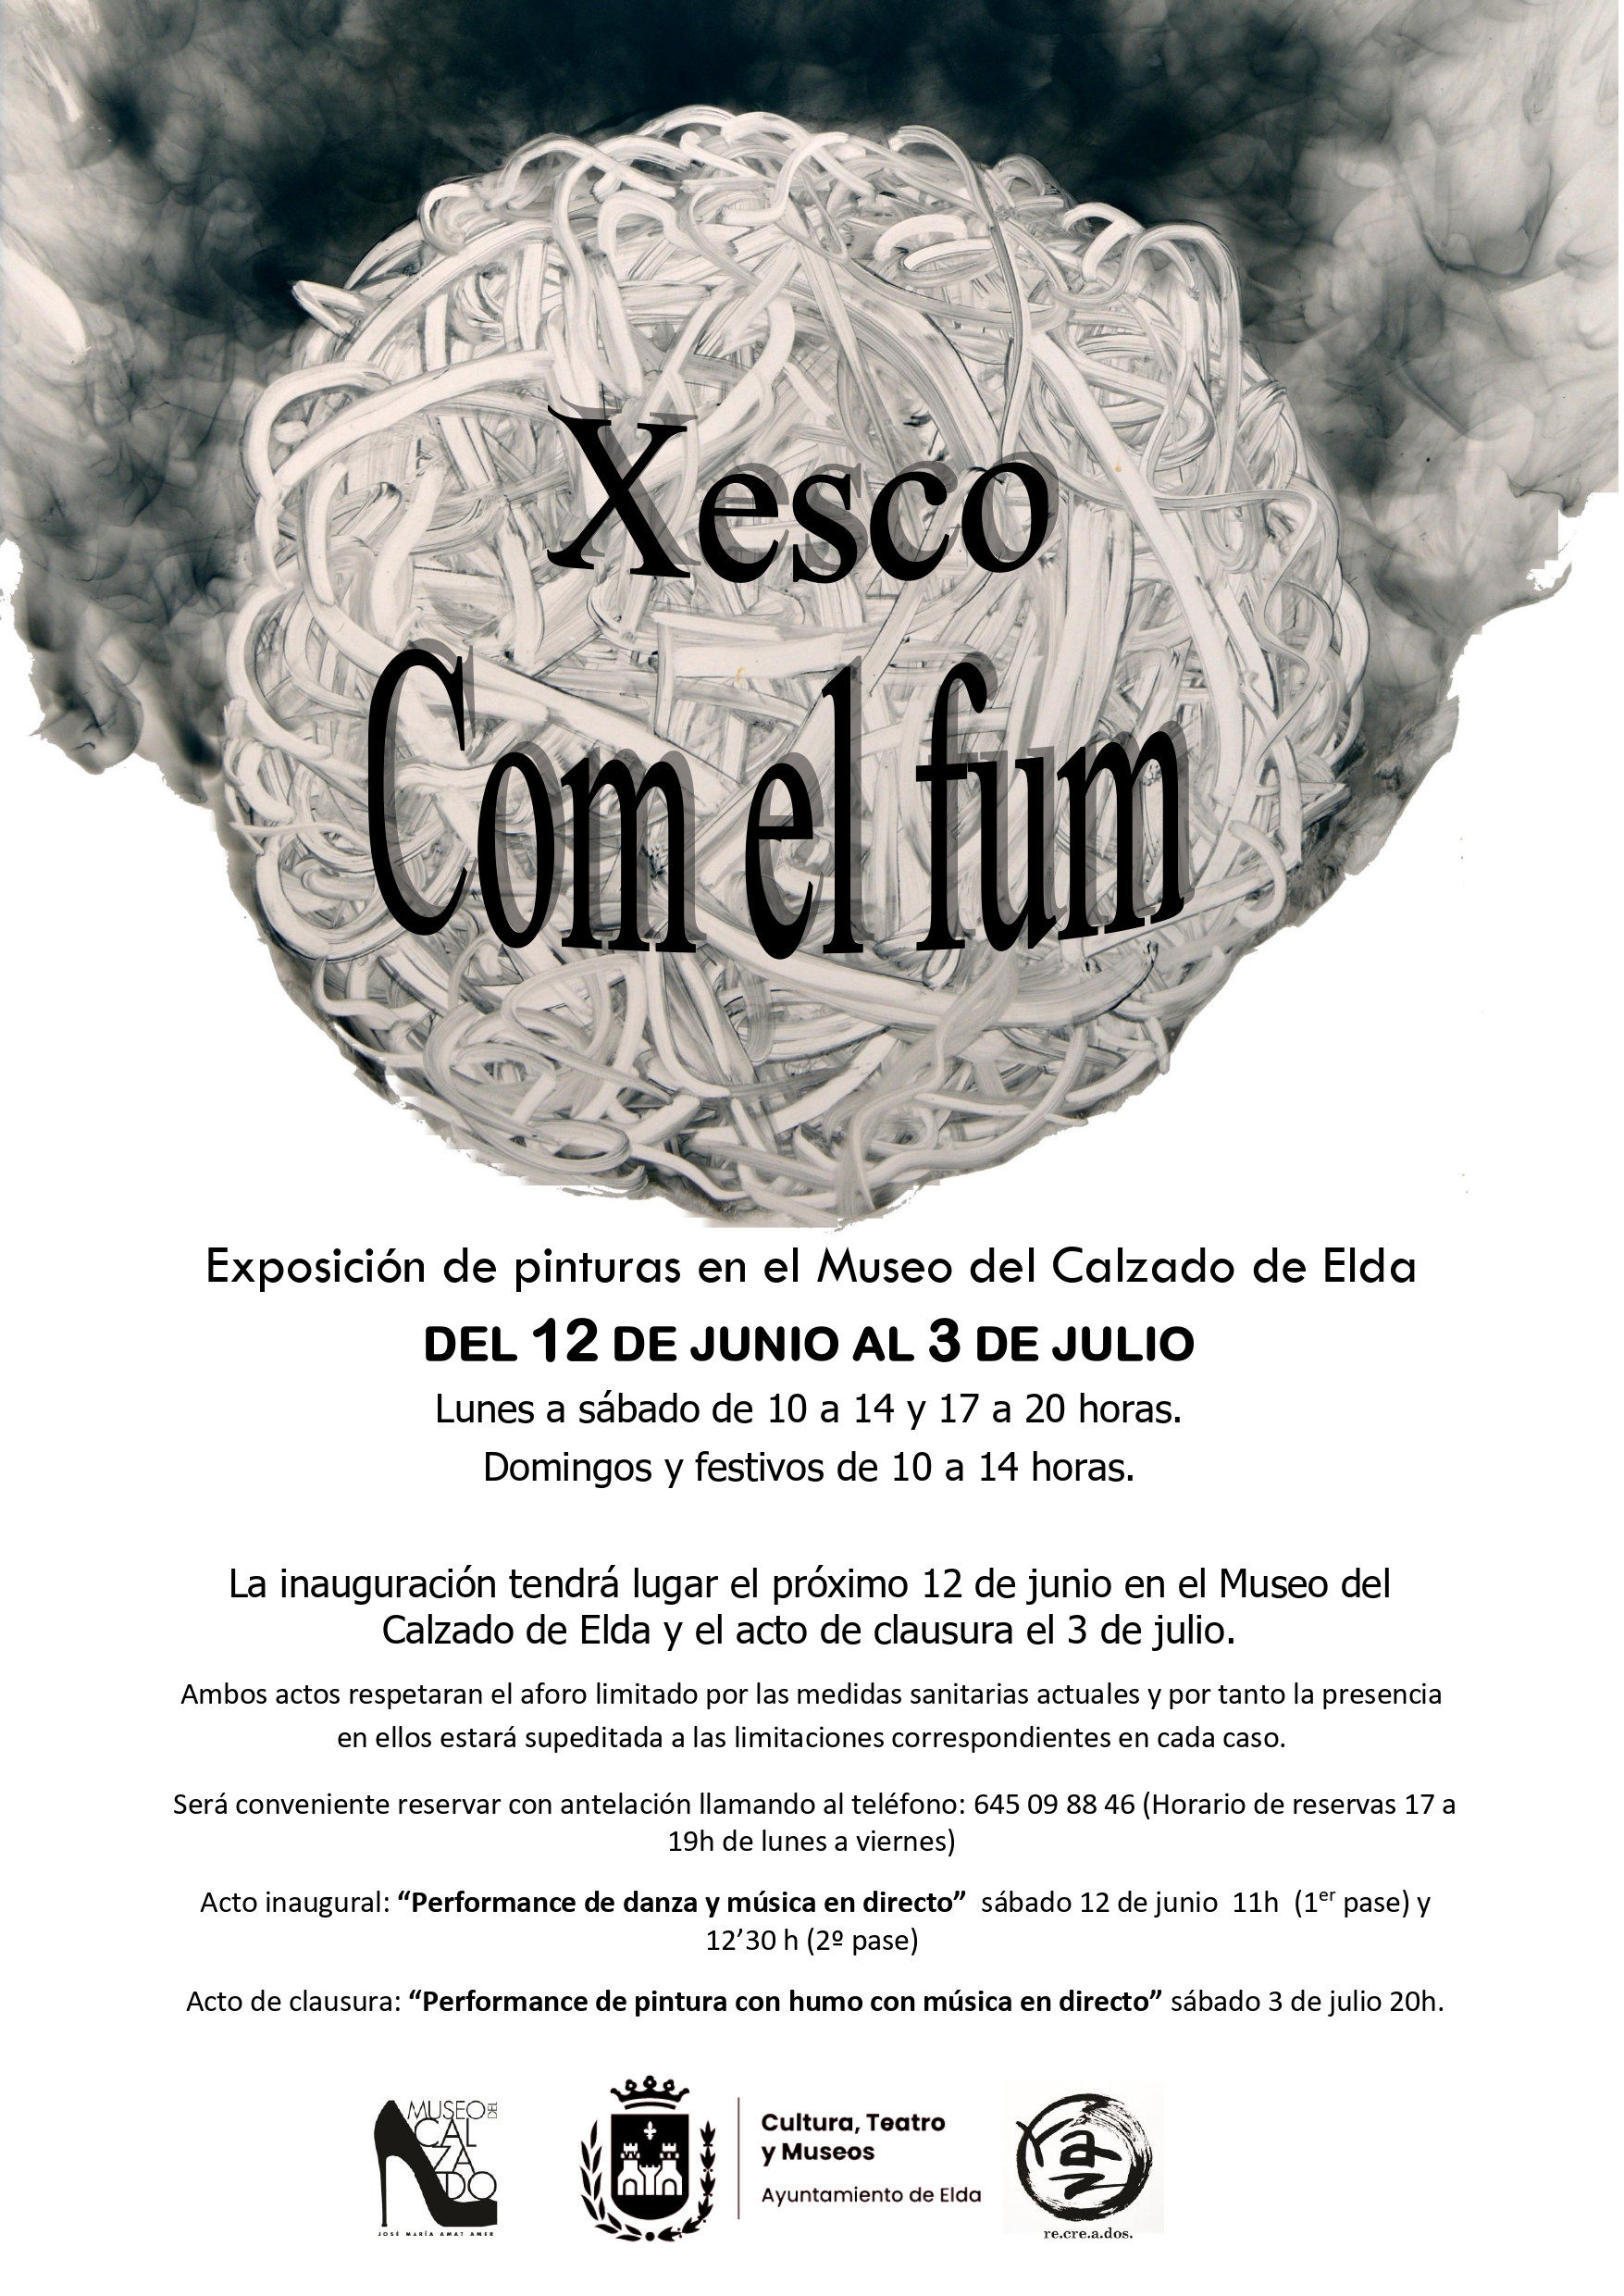 El Museo del Calzado de Elda acoge la exposición de pinturas ‘Com el fum’, del artista valenciano Xesco Máñez